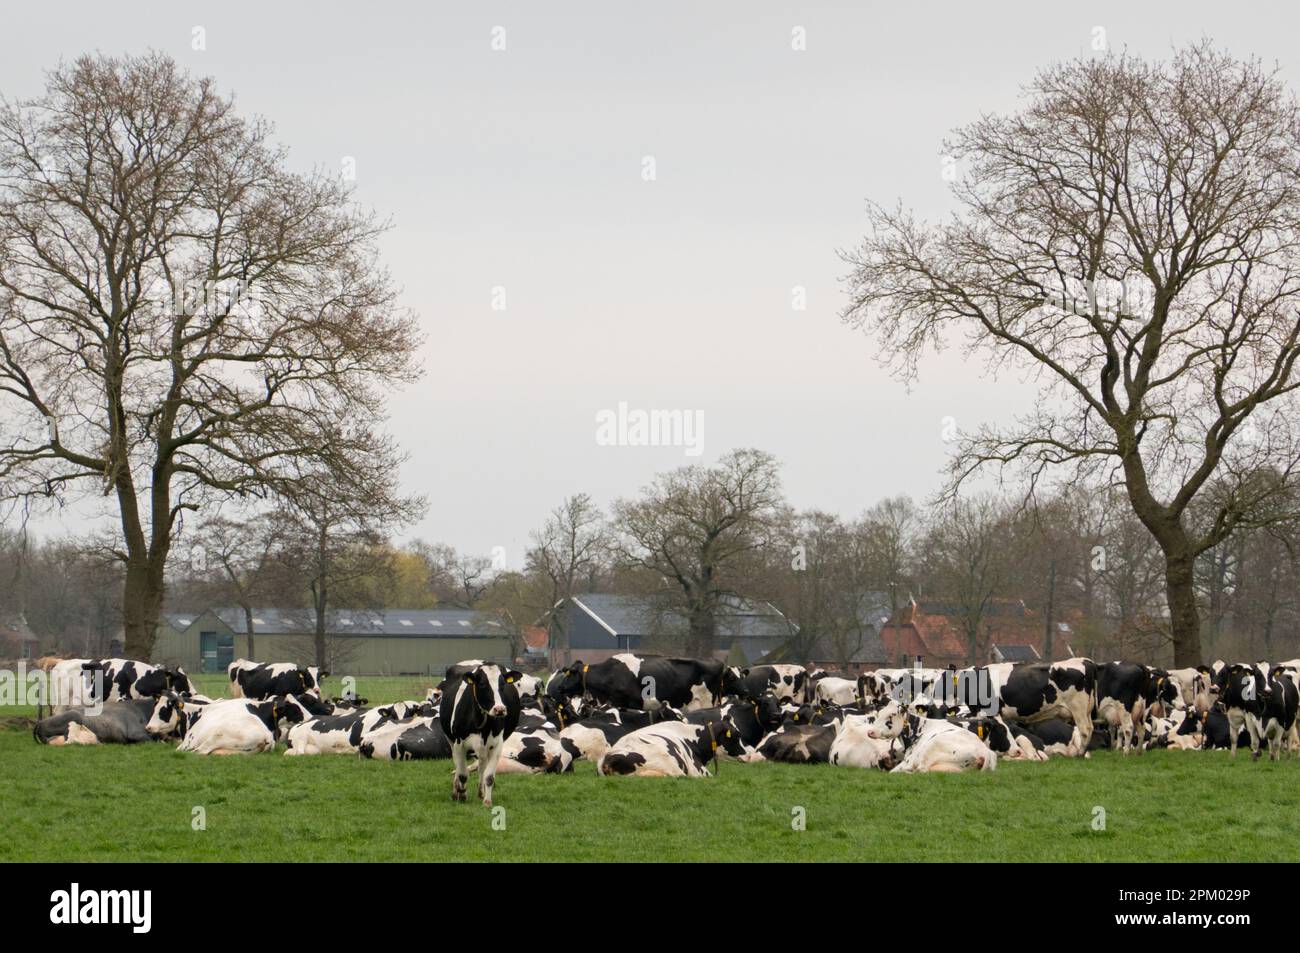 Grand troupeau de vaches laitières noires et blanches dans un pré Banque D'Images